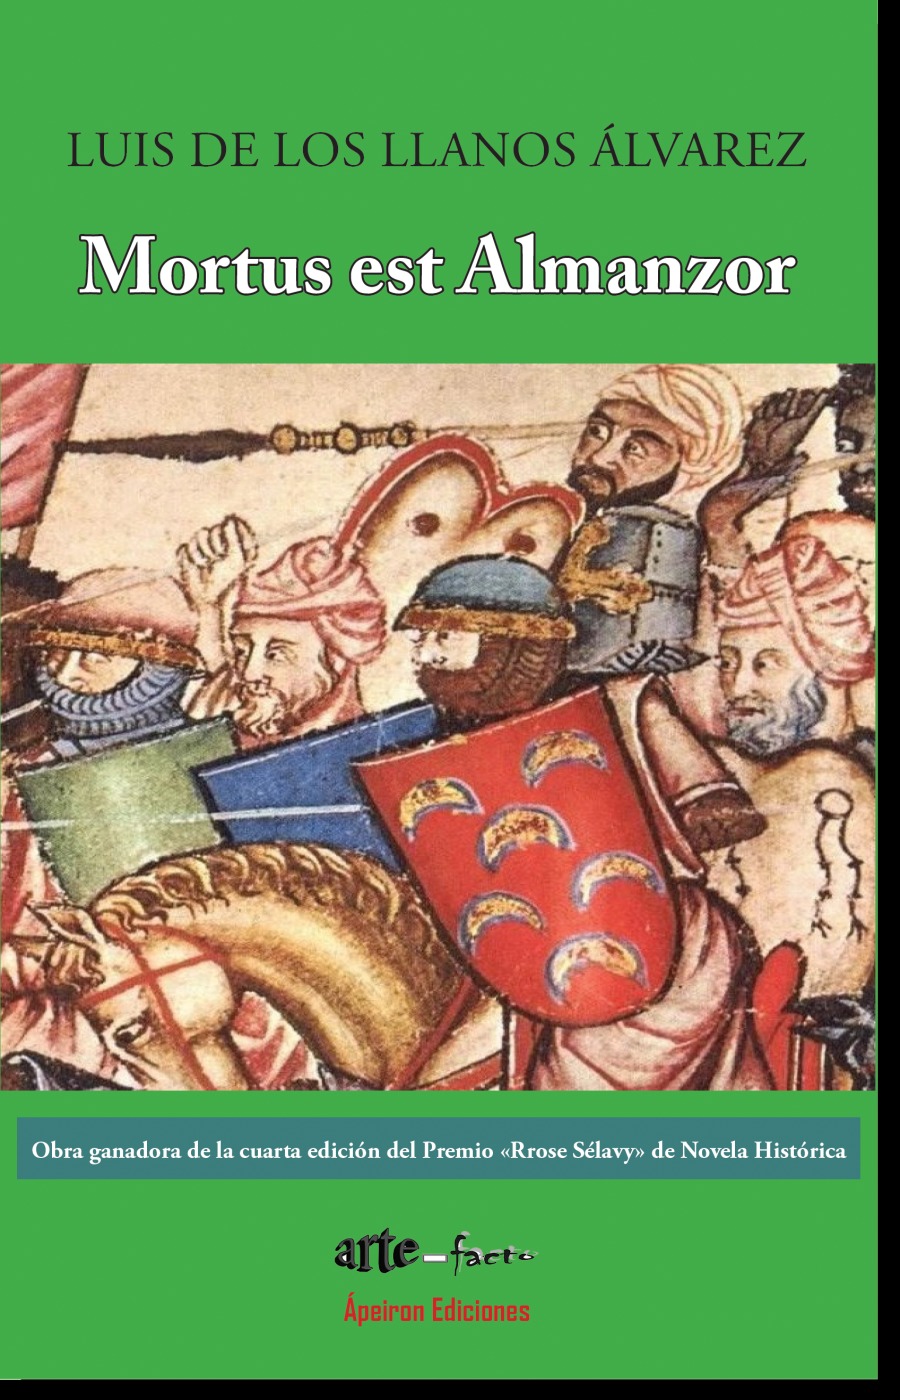 Mortus est Almanzor

 

Obra ganadora de la cuarta edicién del Premio «Rrose Sélavy» de Novela Historica